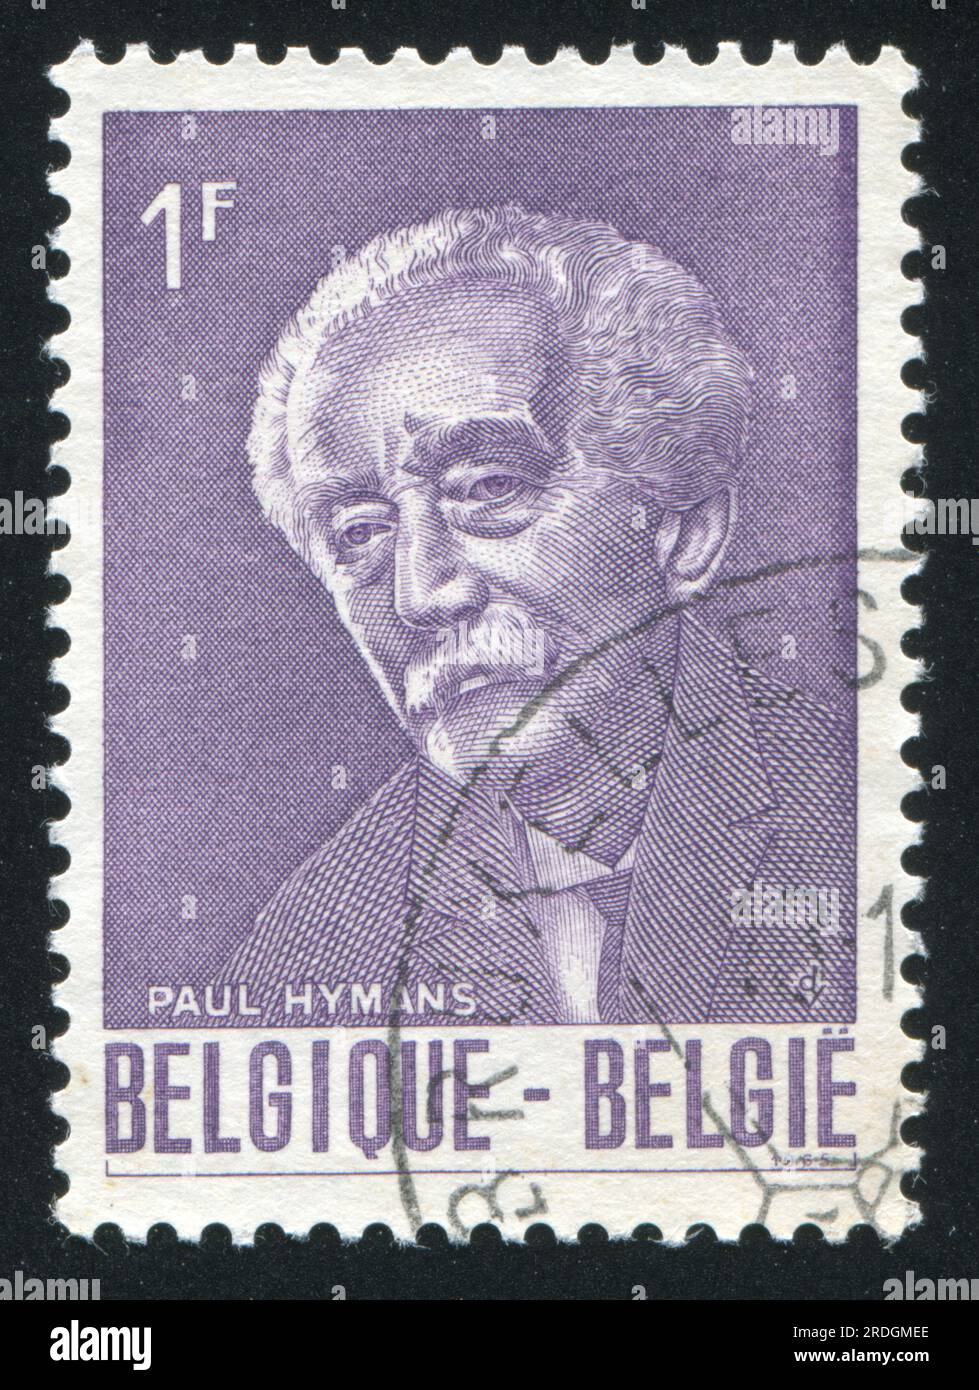 BELGIEN - CA. 1965: Briefmarke gedruckt von Belgien, zeigt Paul Hymans, belgischer Außenminister, erster Präsident des Völkerbundes, ca. 1965 Stockfoto